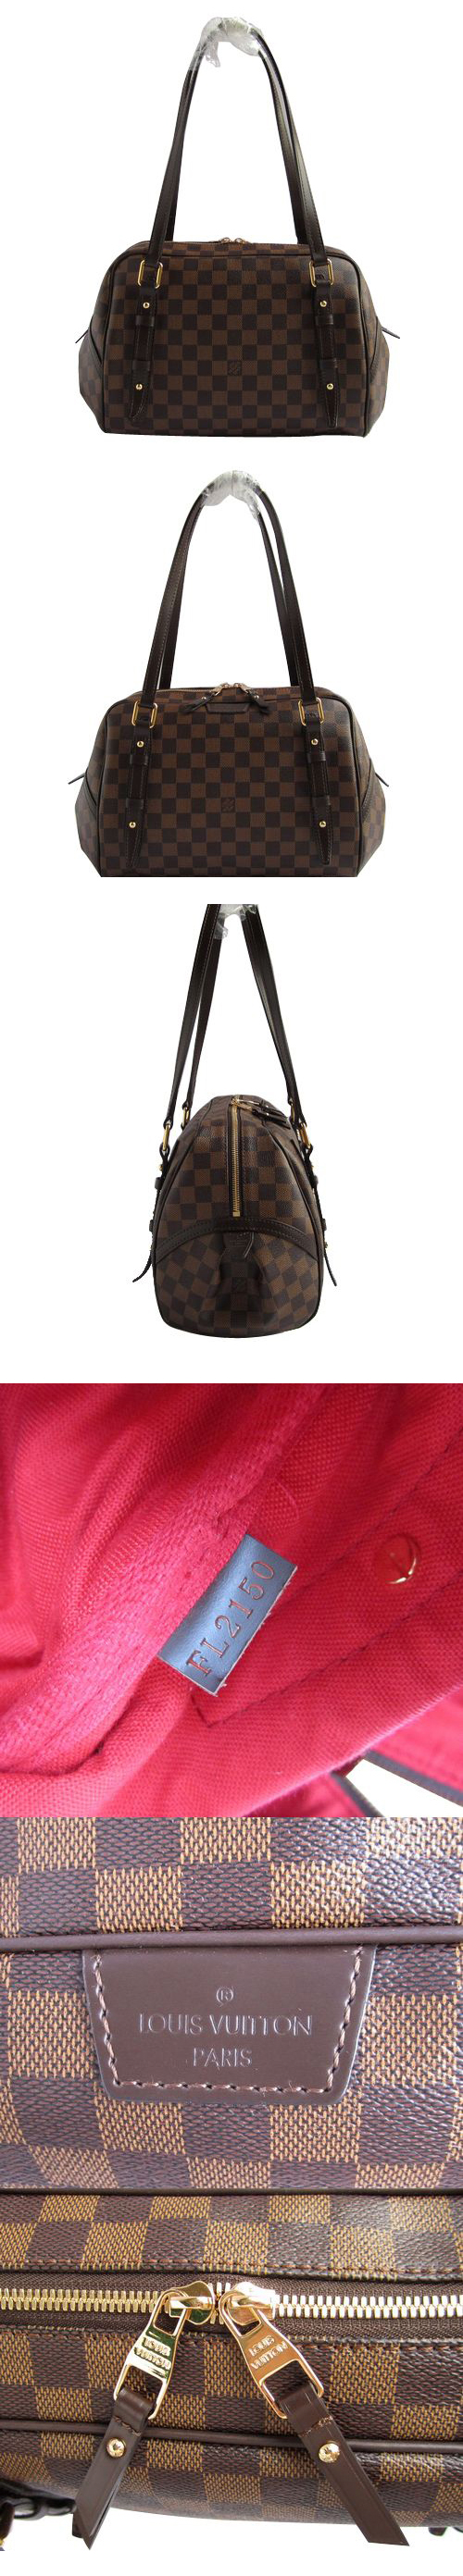 ブランド通販Louis Vuitton-ルイヴィトン-bag-N41158-brown激安屋-ブランドコピー